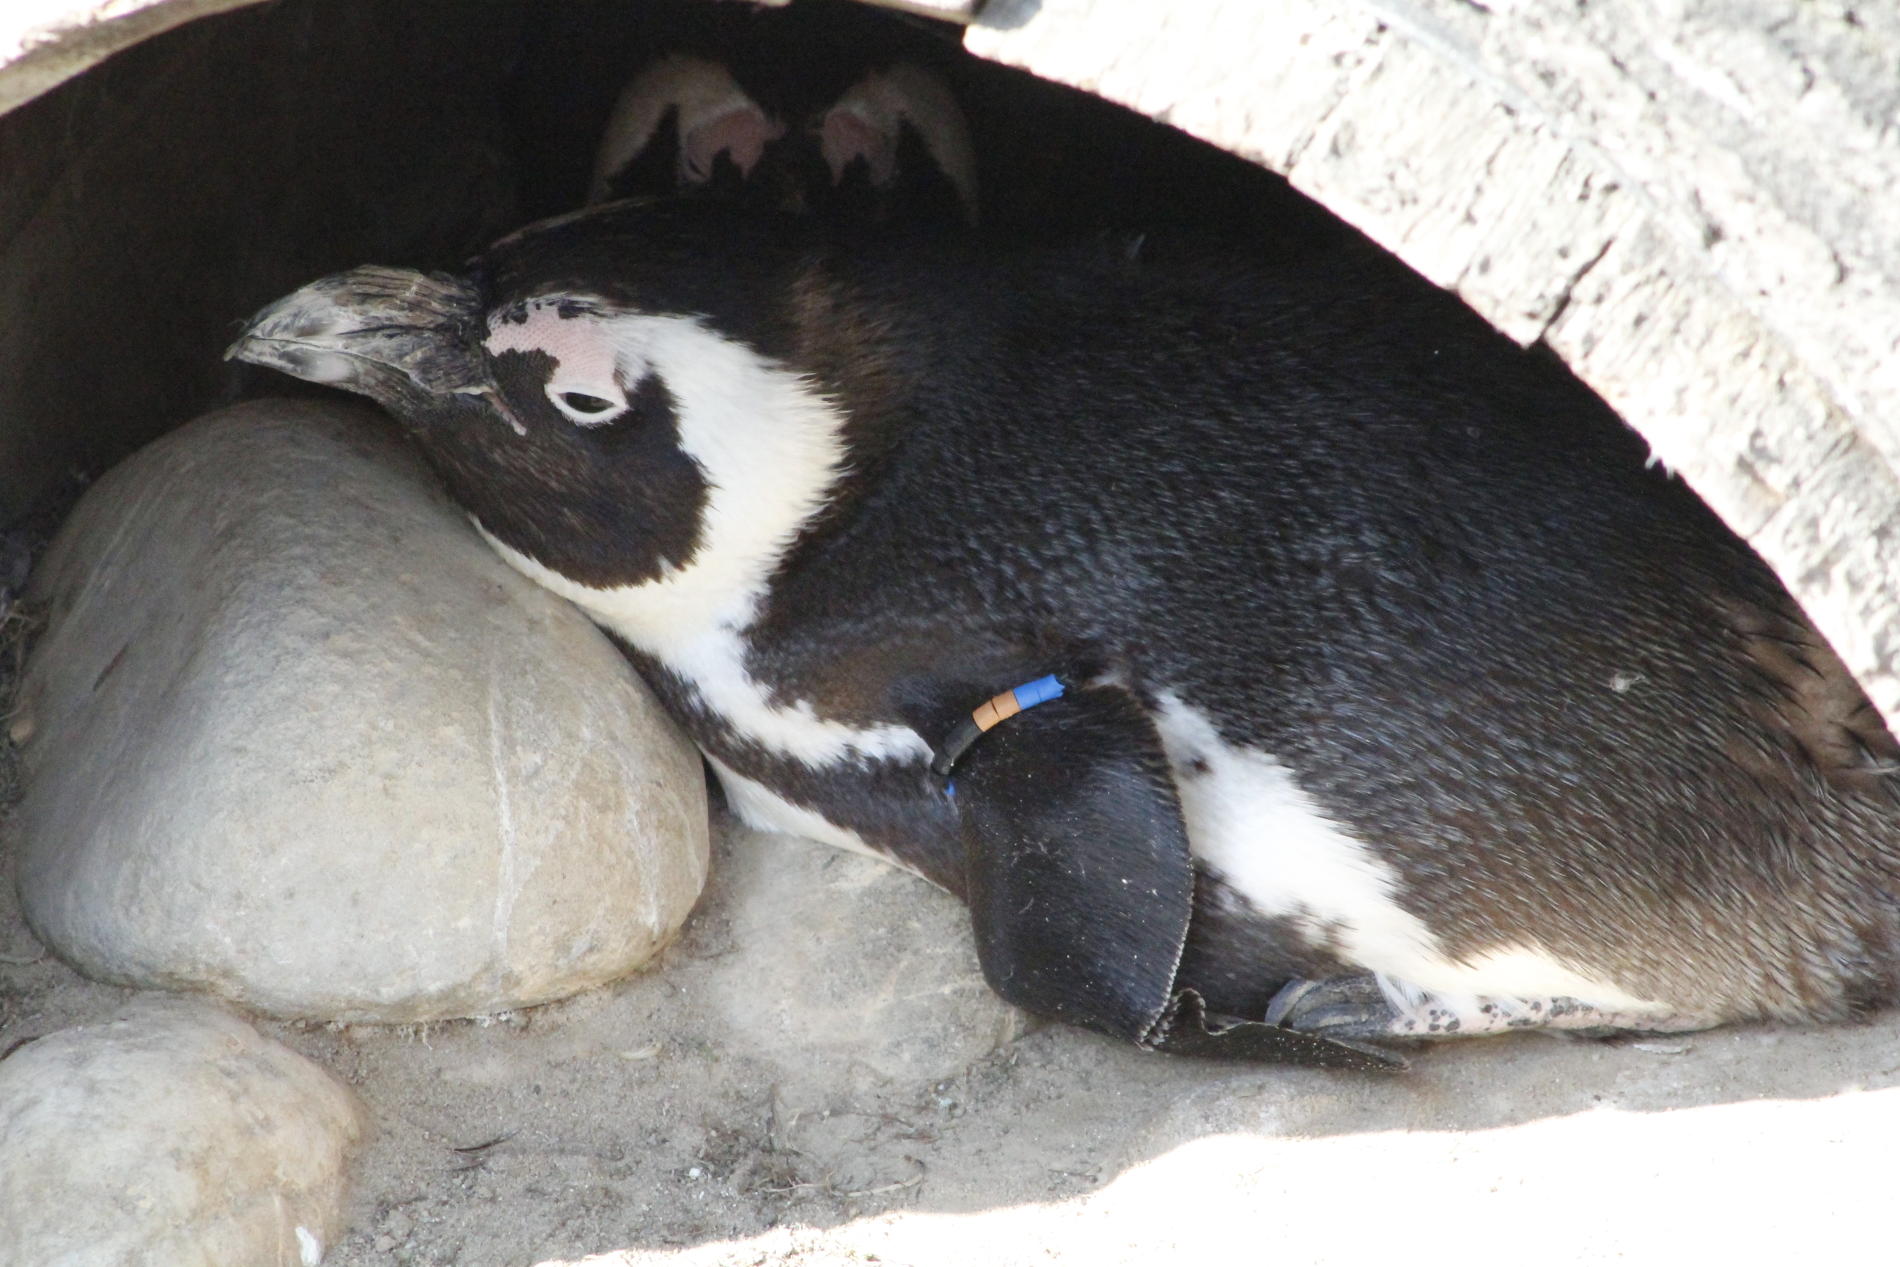 Pinguin im Erlebnisszoo Hannover der sich in einem Fass auf einem Stein liegend ausruht